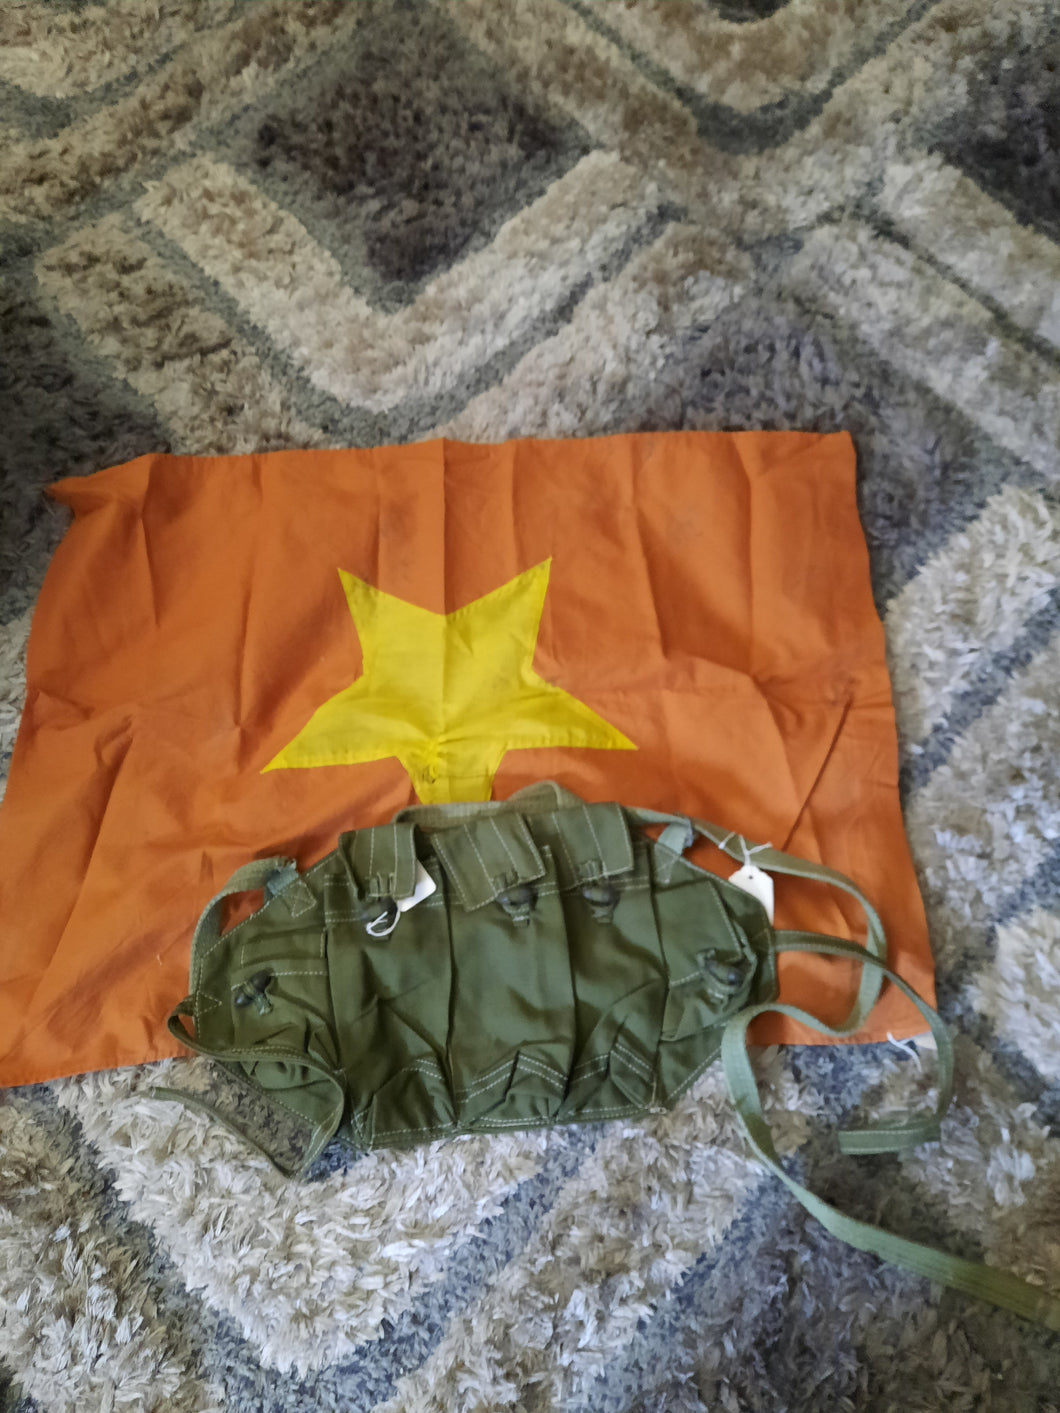 Vietnam War era NVA flag and NVA AK-47 mag chest rig